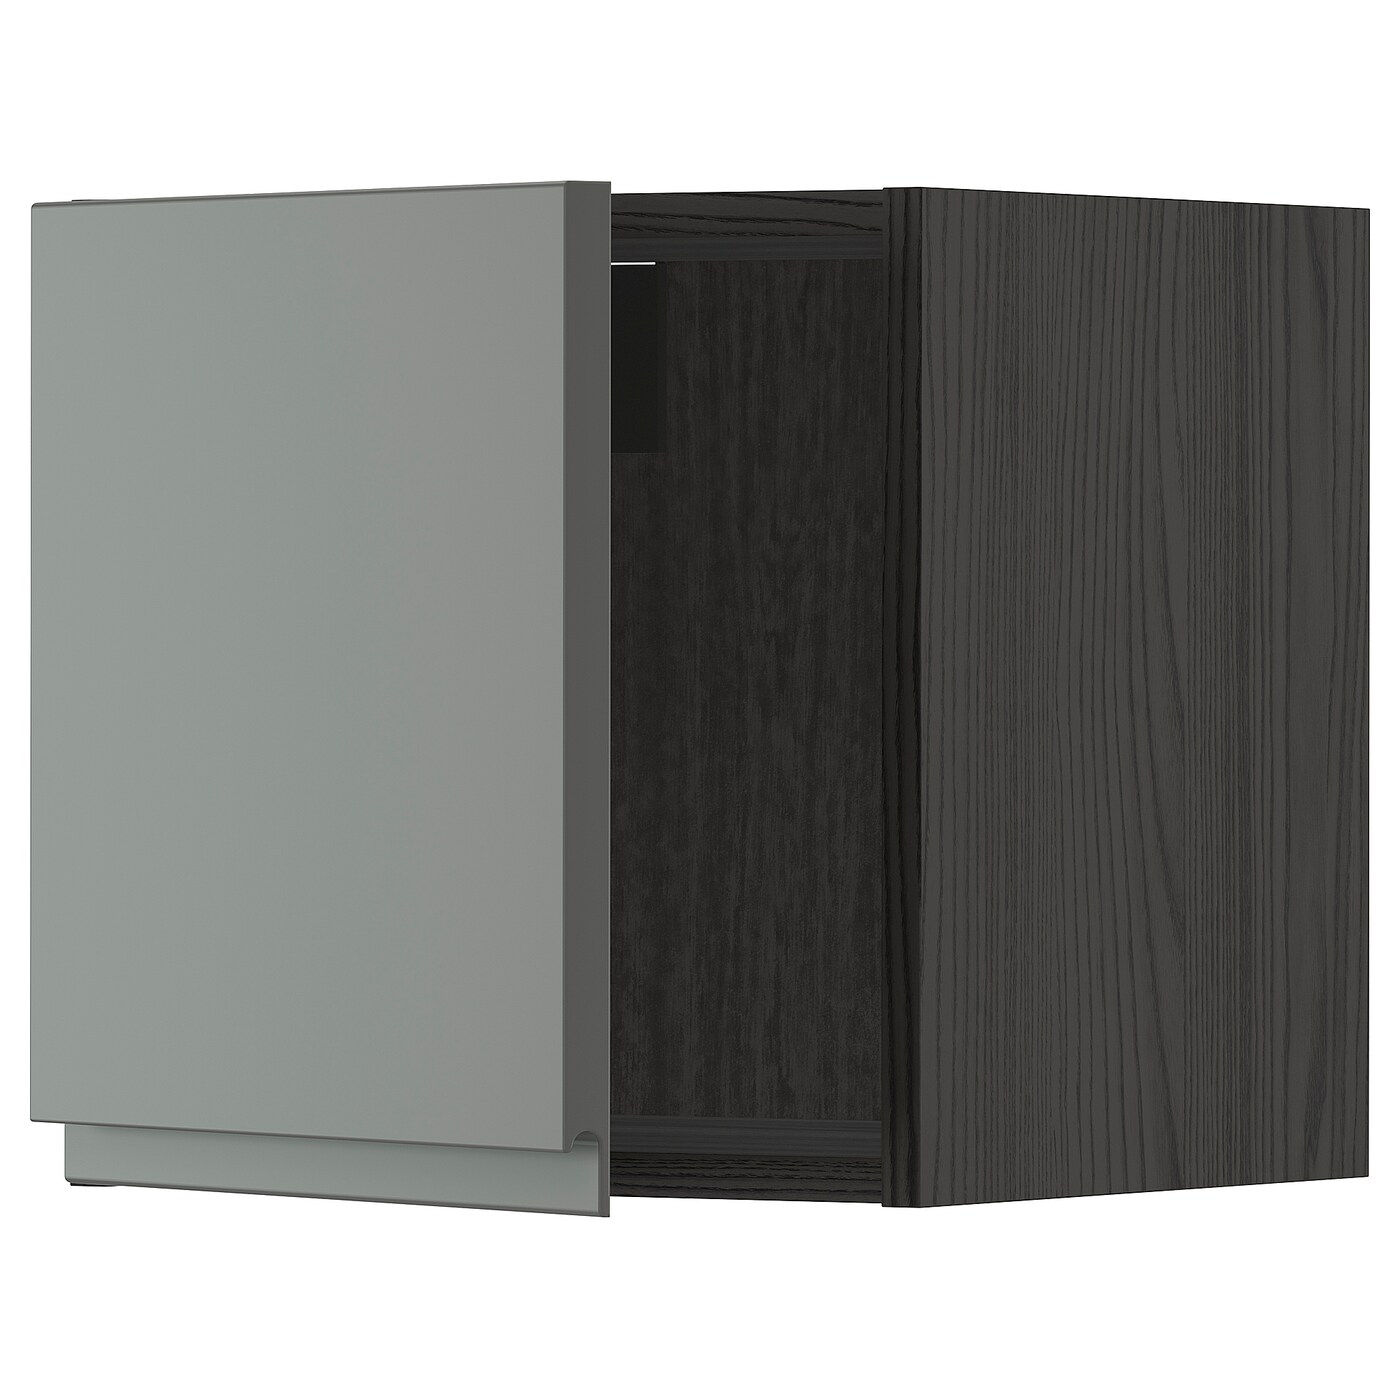 Навесной шкаф - METOD IKEA/ МЕТОД ИКЕА, 40х40 см,  черный/темно-серый